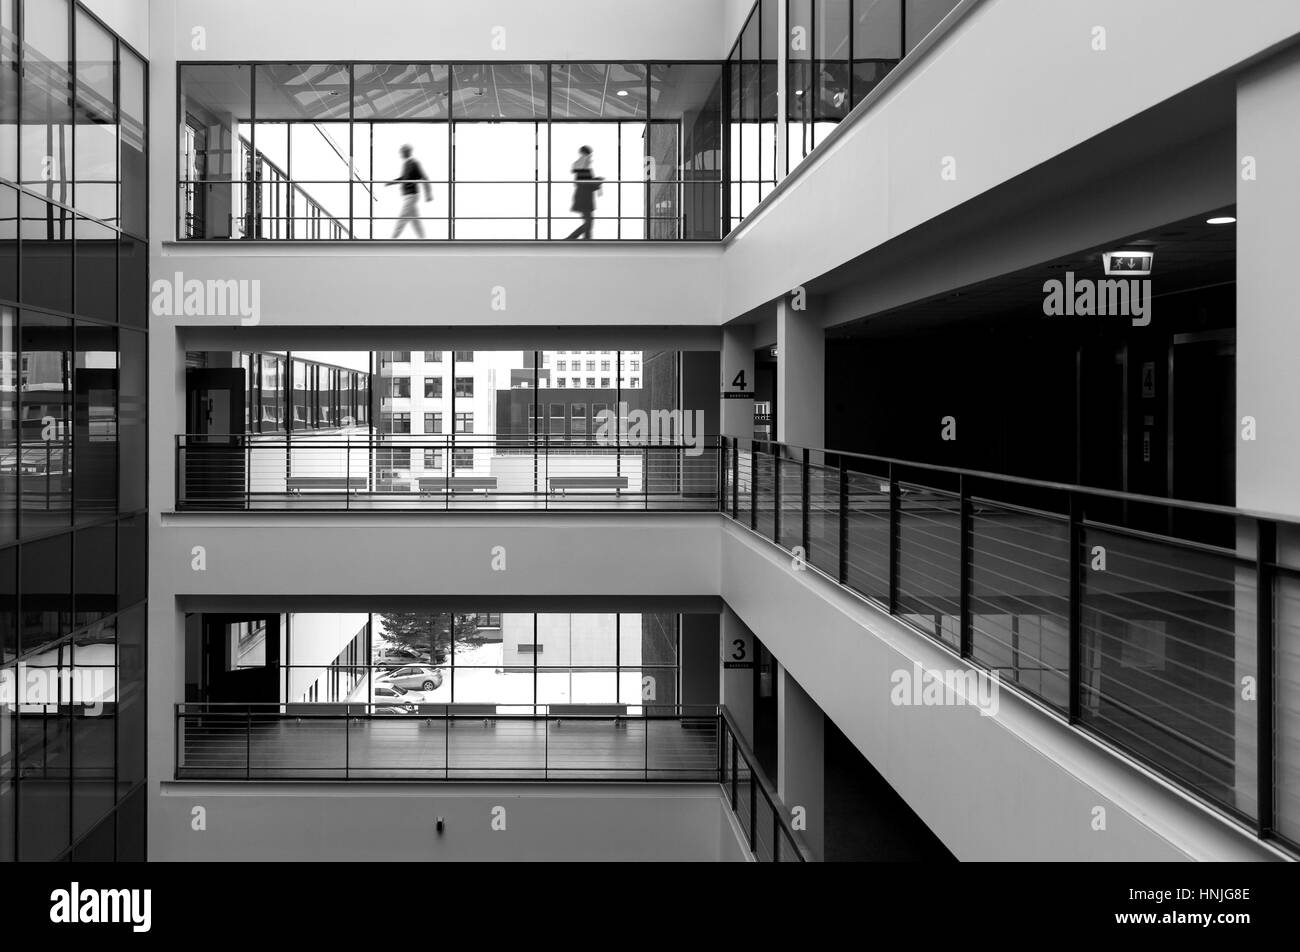 Intérieur du bâtiment moderne de la fonction publique, avec deux figures de marcher en arrière-plan. Noir et blanc à contraste élevé photo Banque D'Images